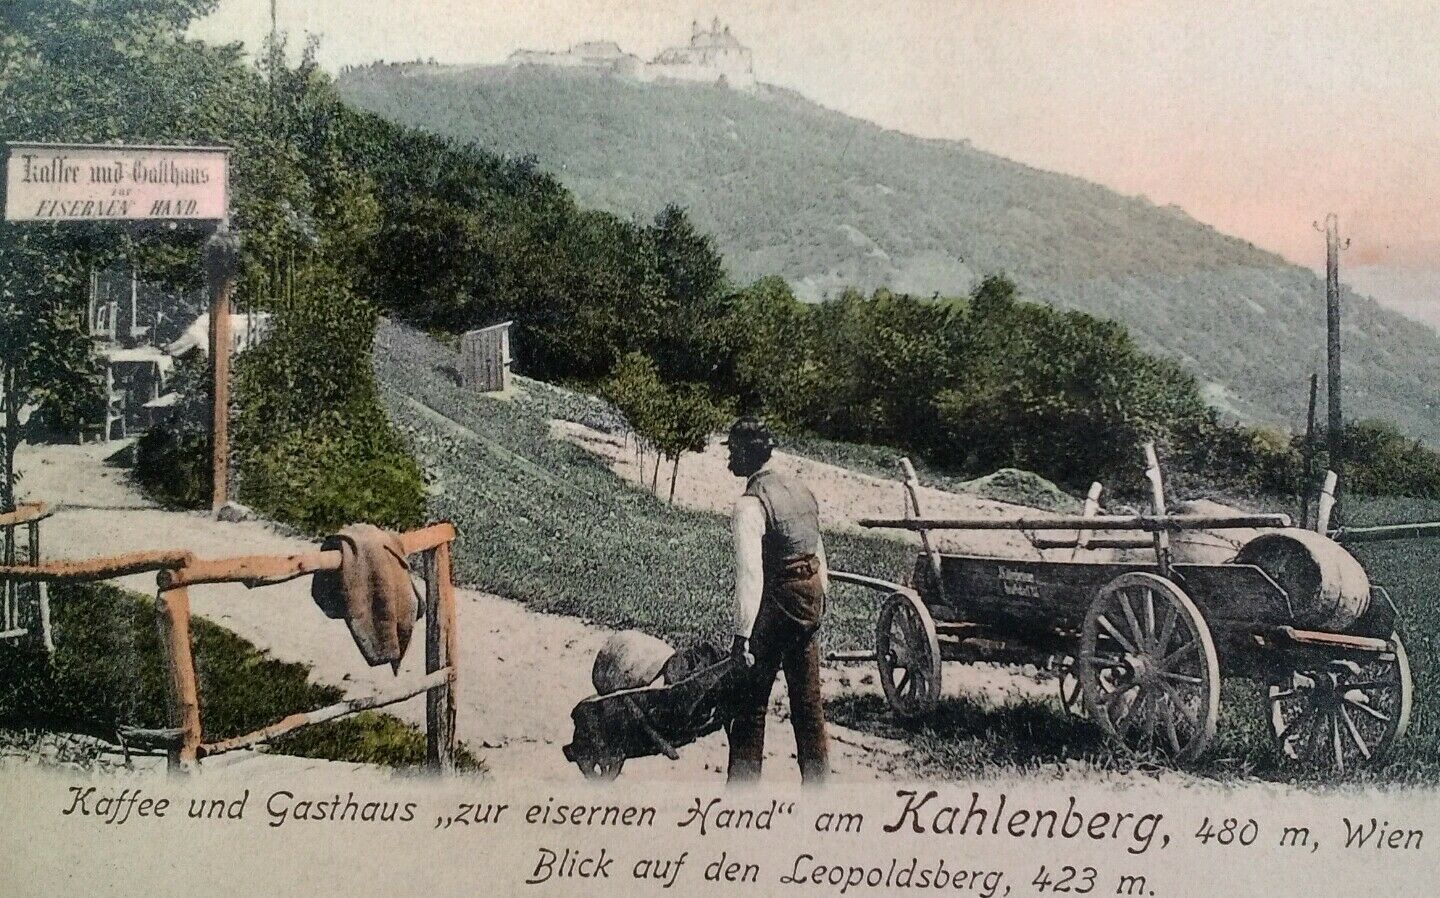 Kahlenburg Vienna Austria Postcard Early 1900s Rare Hotel Cafe Inn Iron Hand